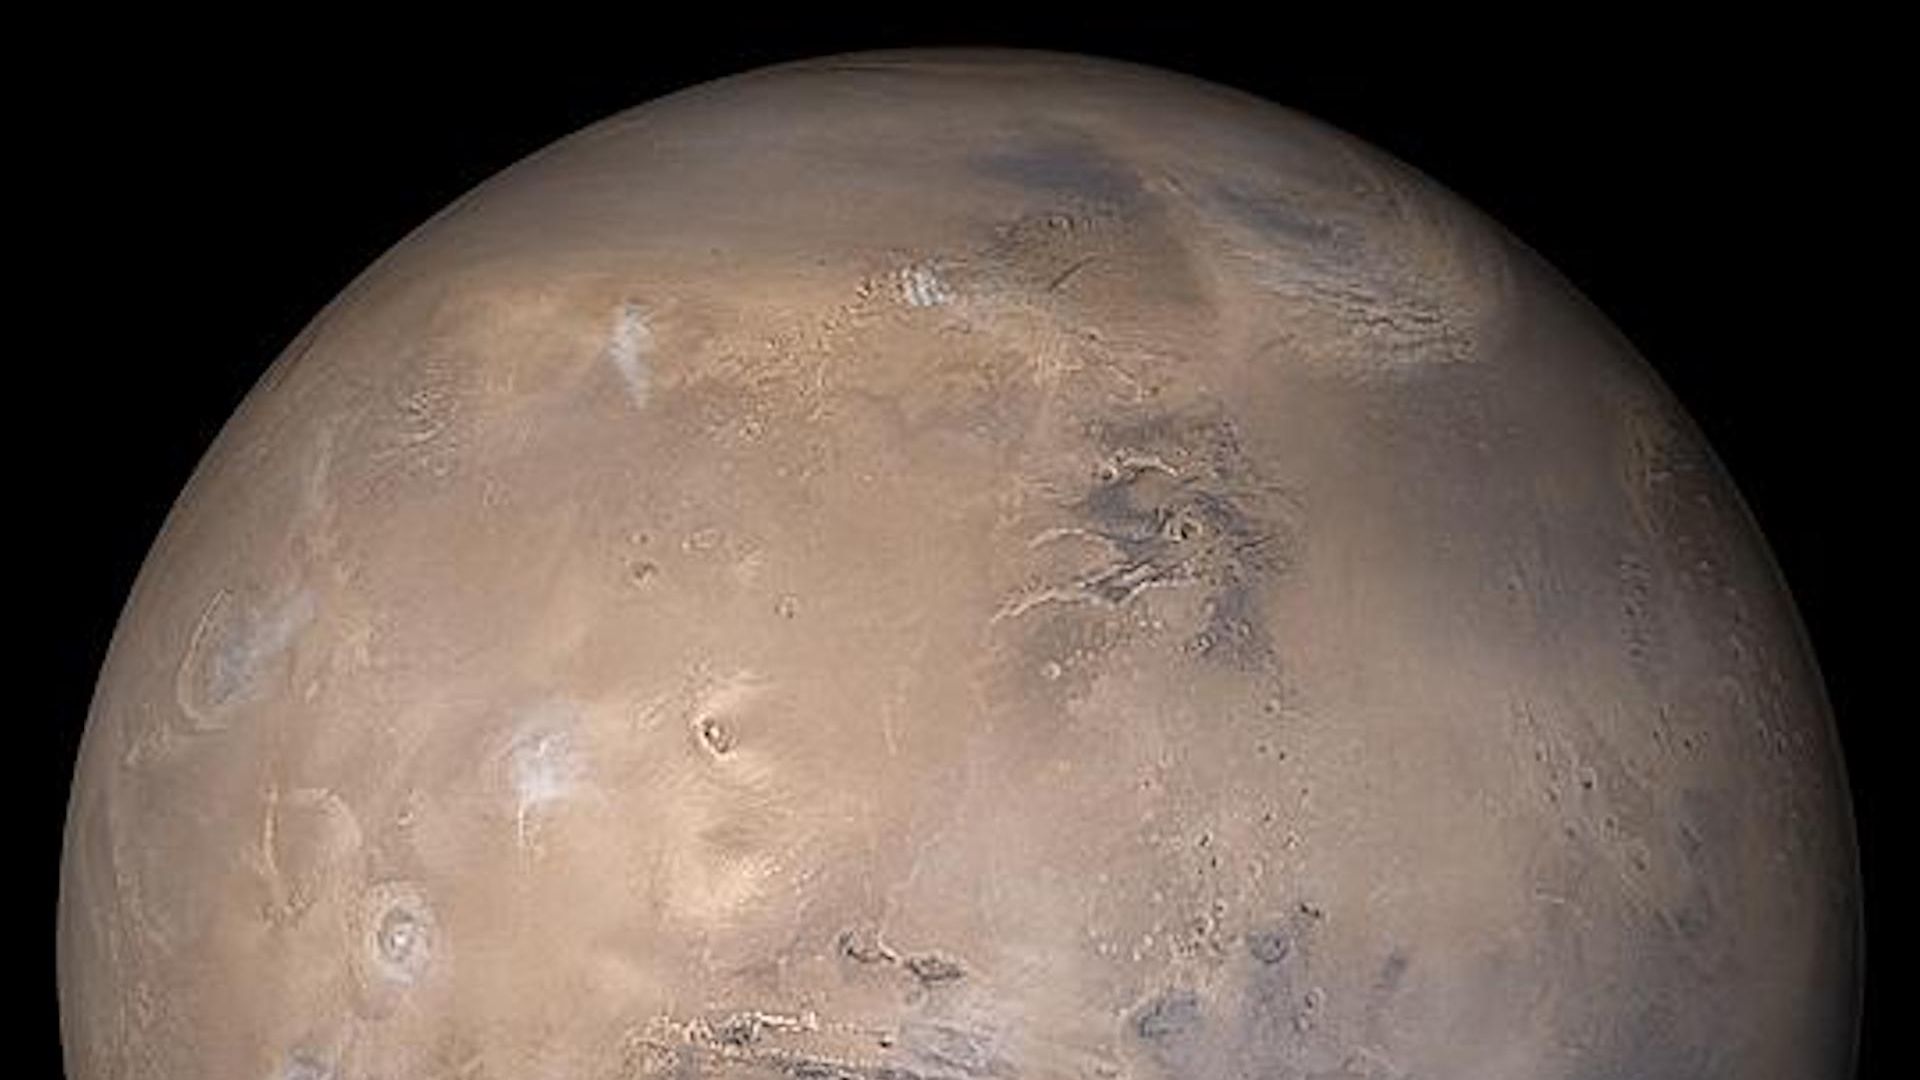 Mars in red seen from orbit in 2003